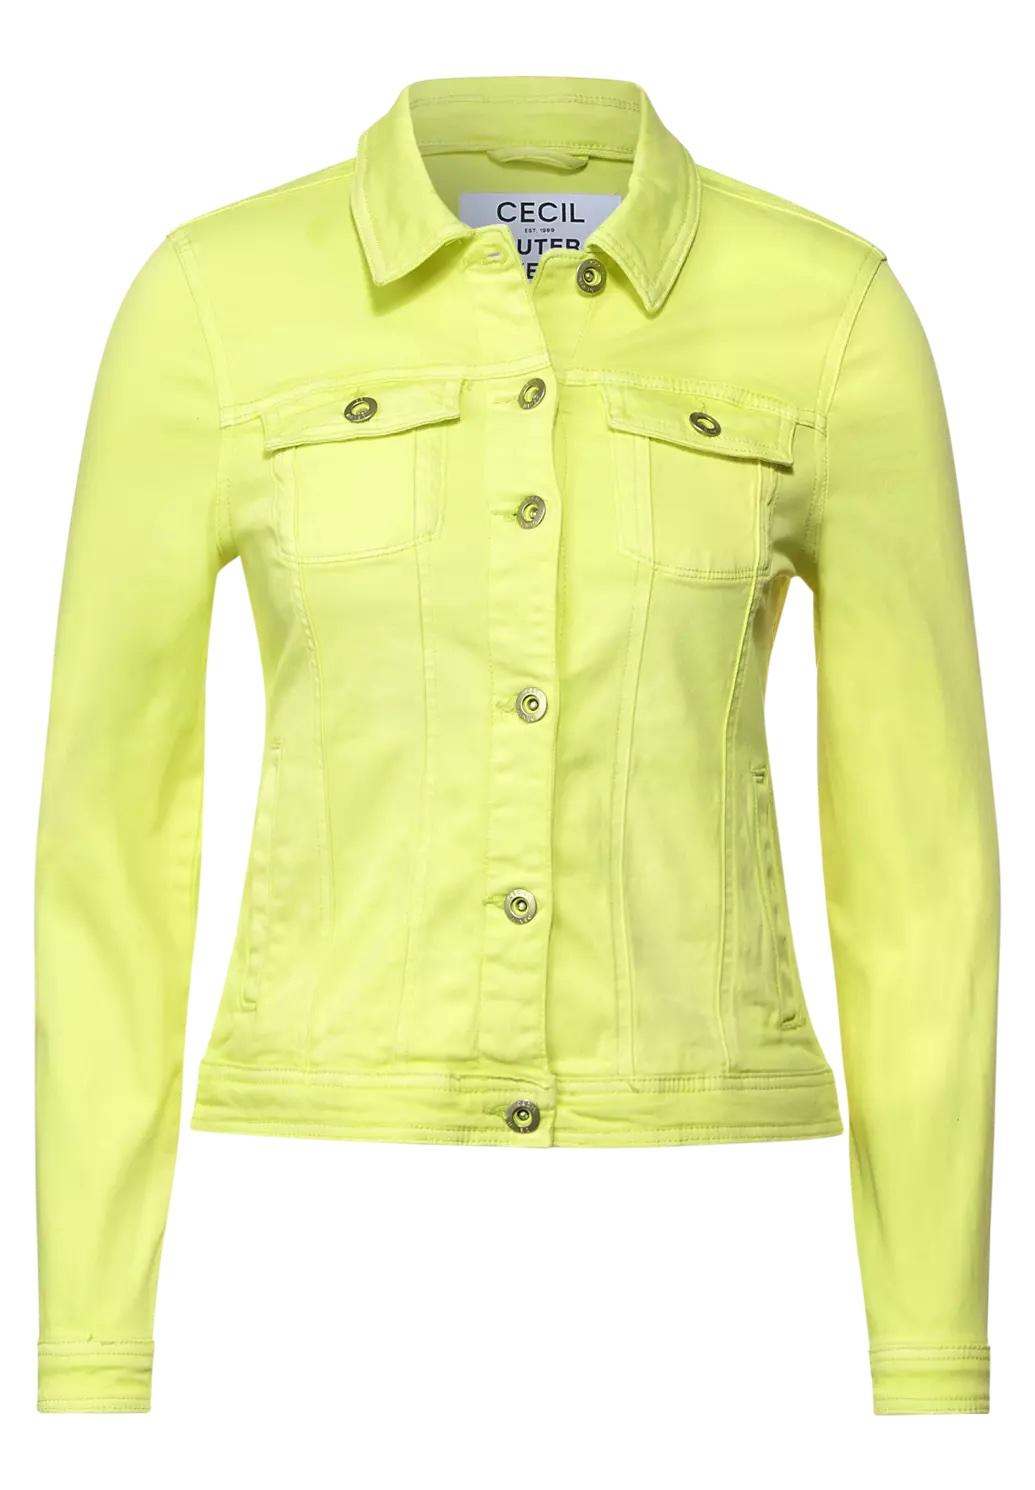 CECIL farebná džínsová bunda, žlt.